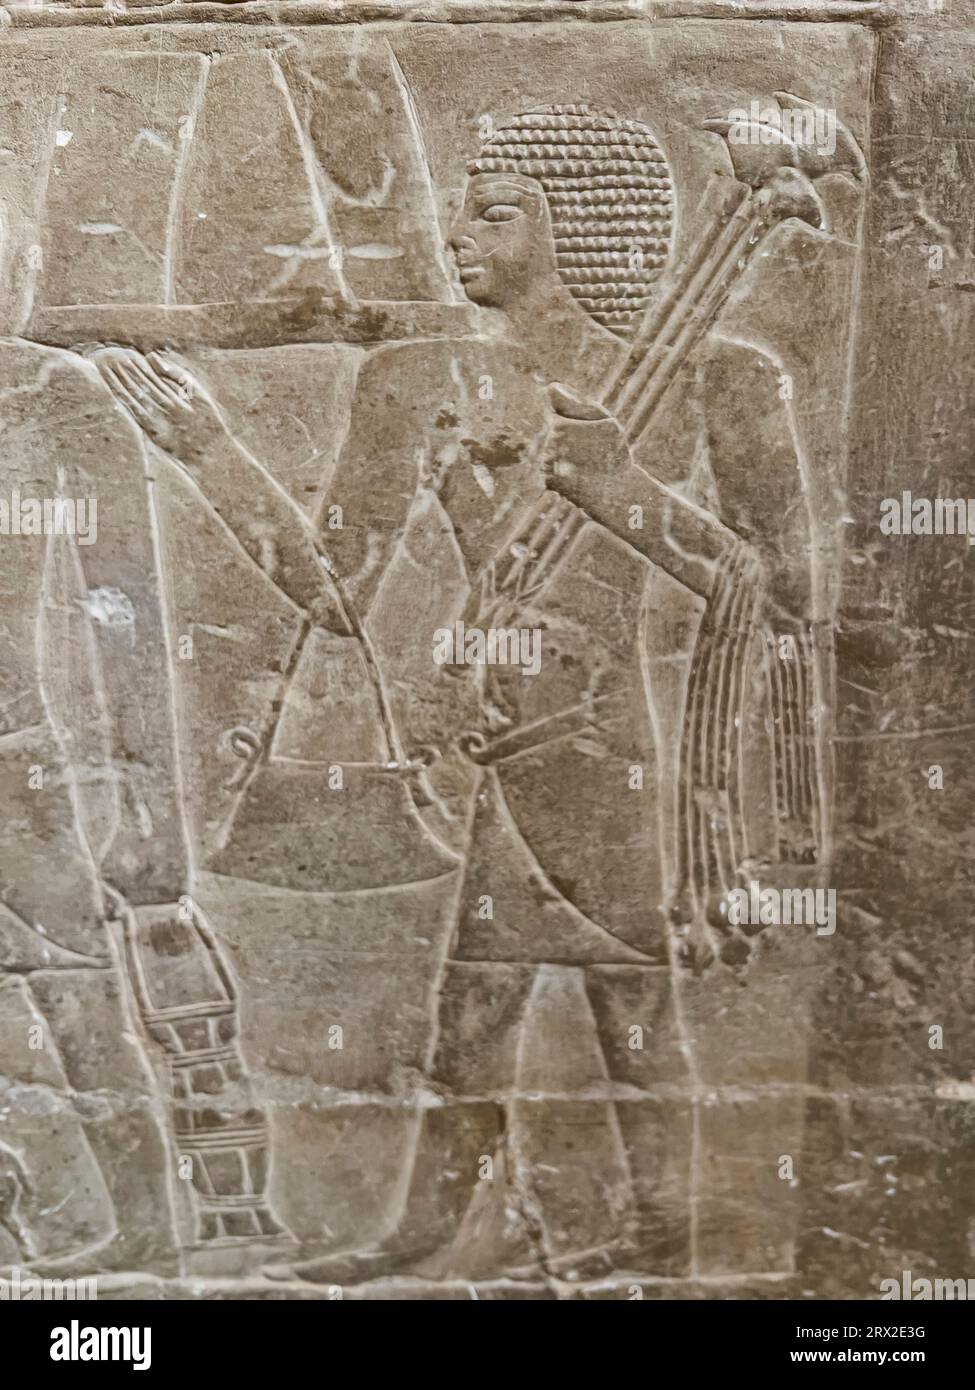 Relief d'une tombe à Saqqara, partie de la nécropole memphite, site du patrimoine mondial de l'UNESCO, Egypte, Afrique du Nord Banque D'Images